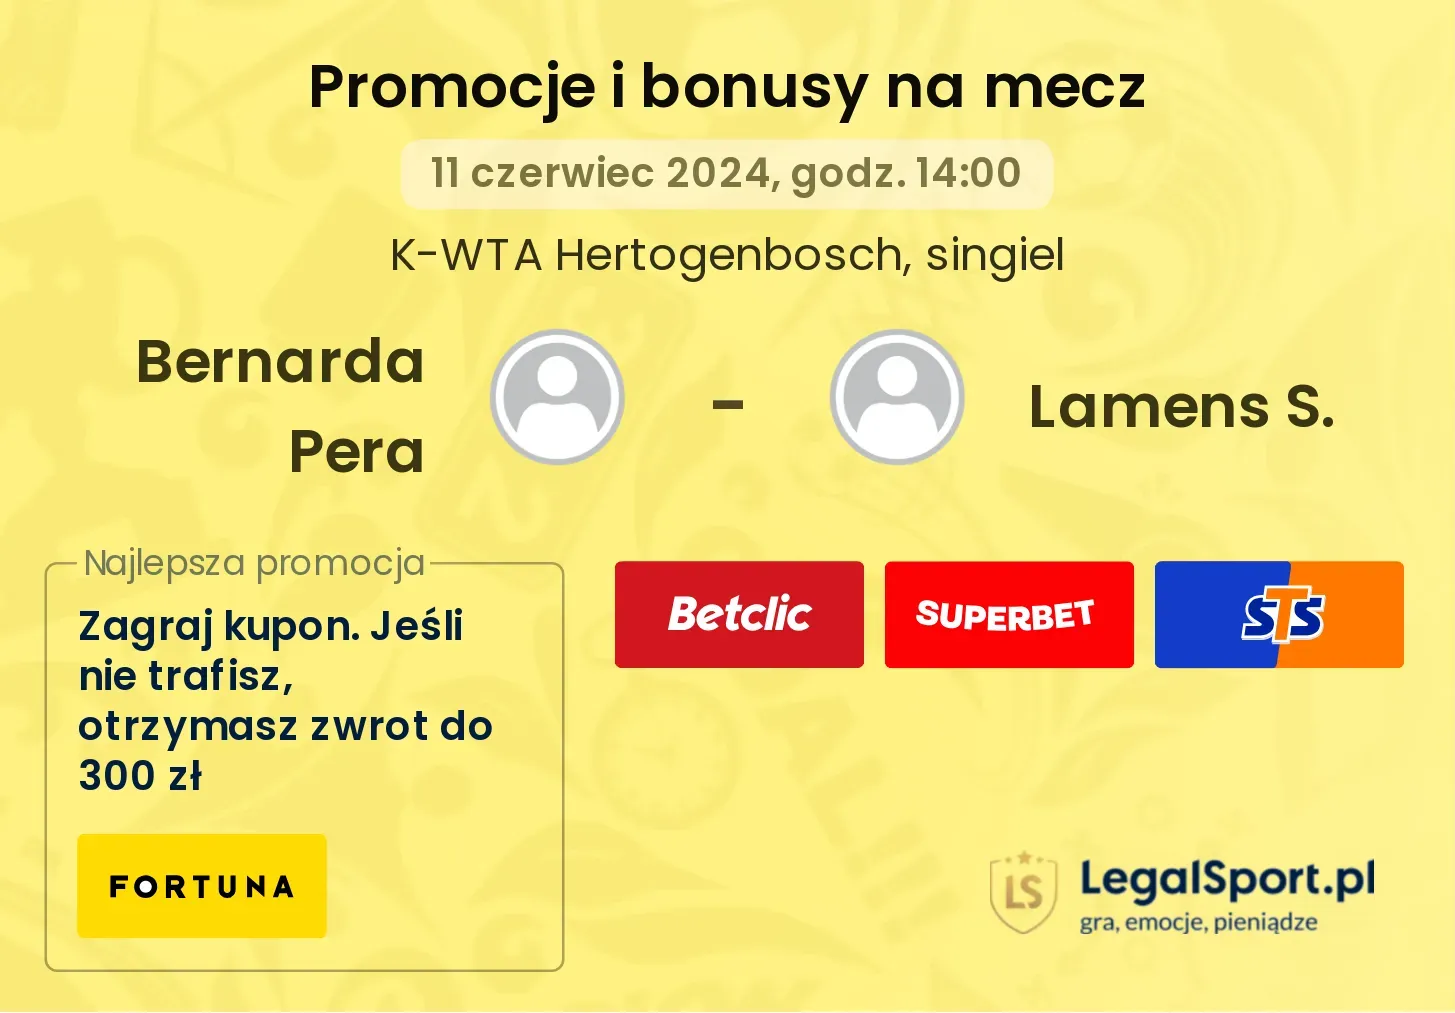 Bernarda Pera - Lamens S. promocje bonusy na mecz